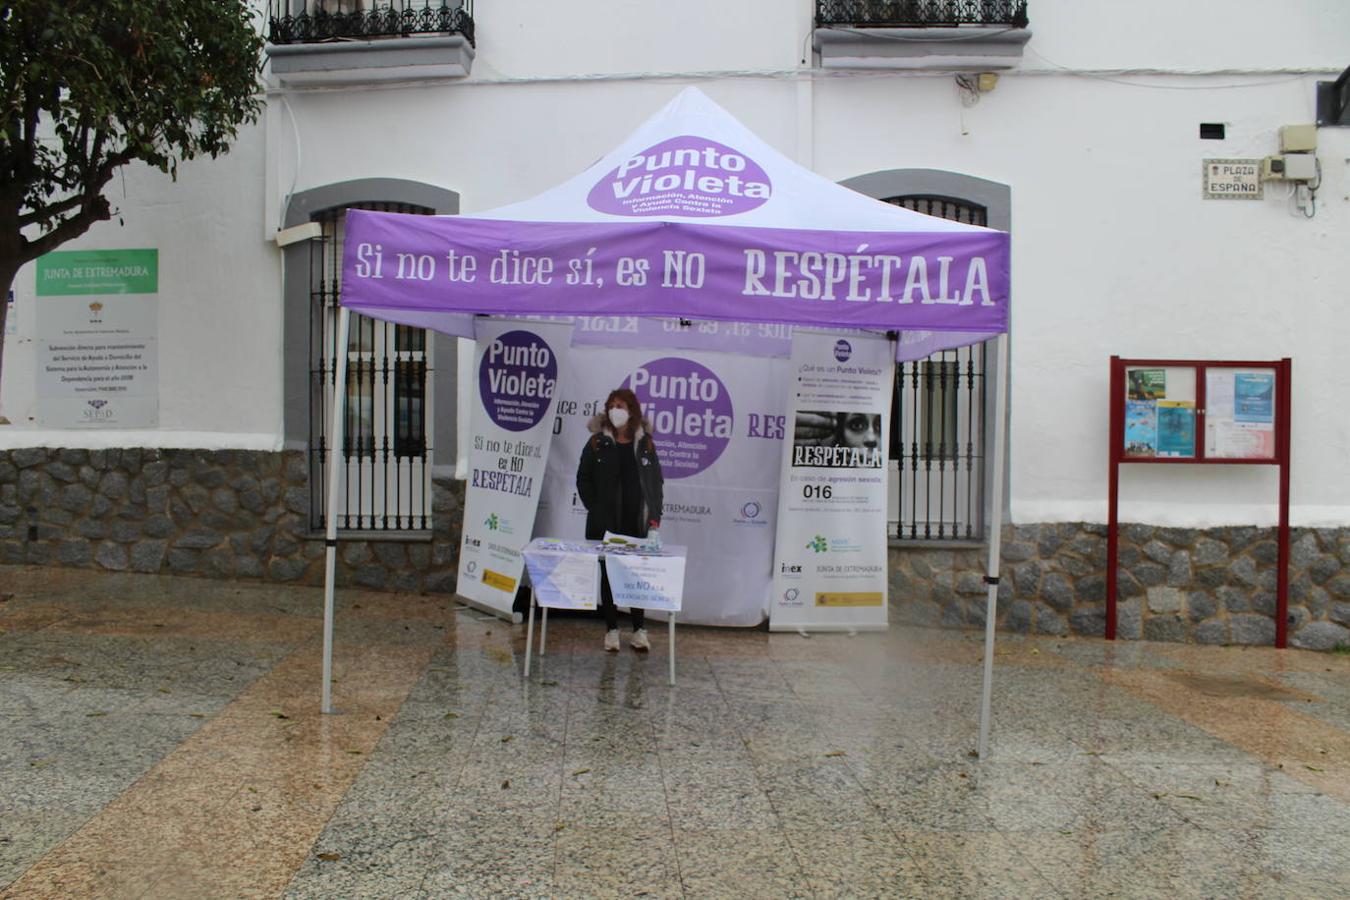 La lluvia dejó un poco desamparado el Punto Violeta ubicado en la Plaza de España desde las 10.00 hasta las 12.00 horas